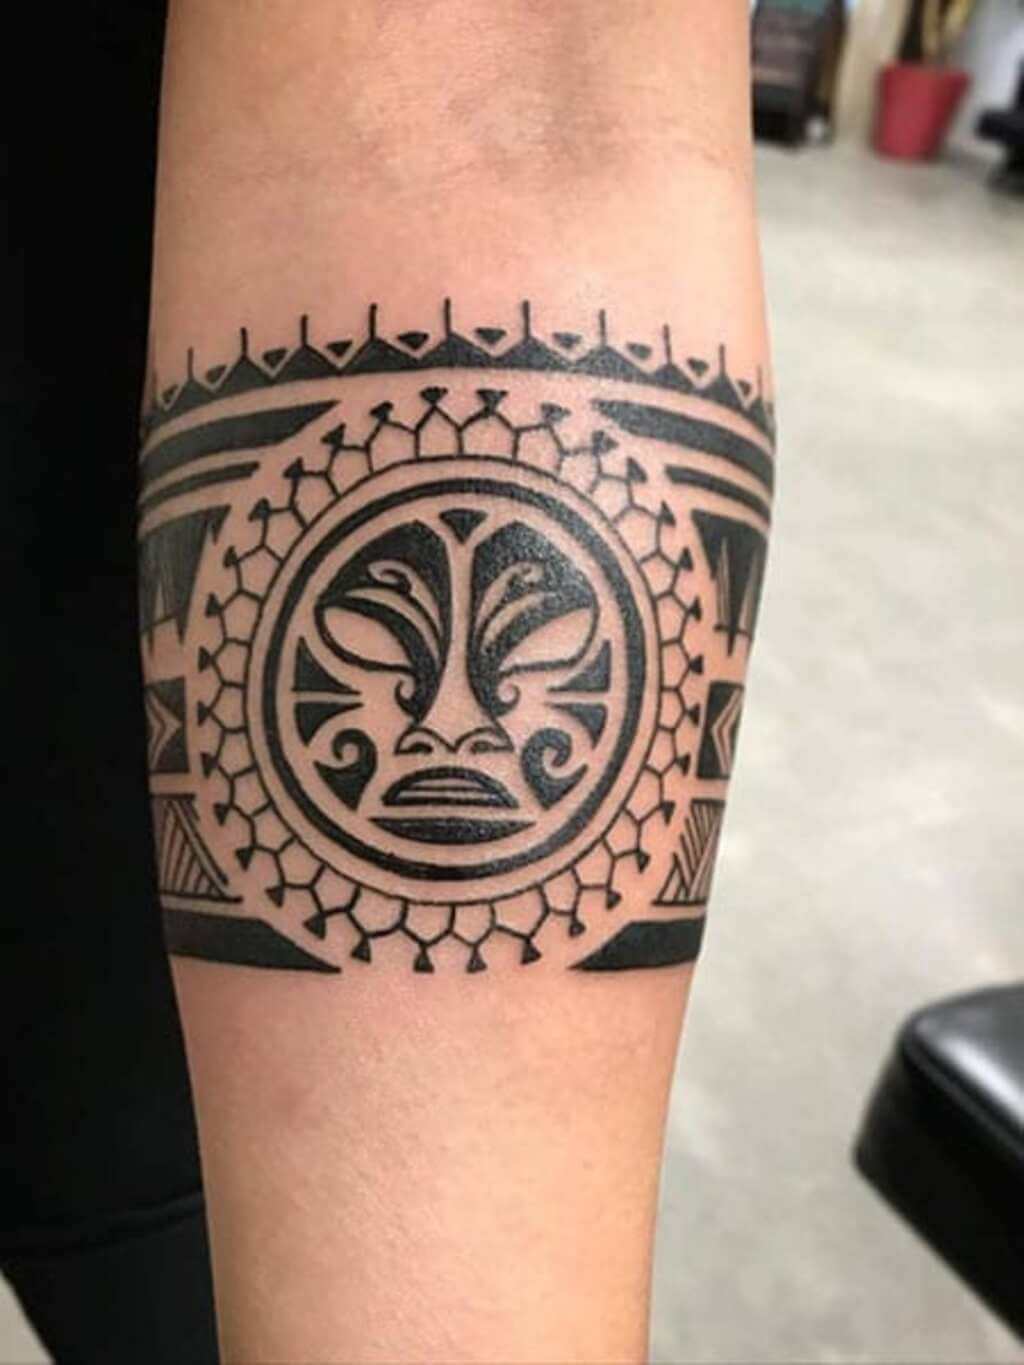 Cool Tribal Tattoos